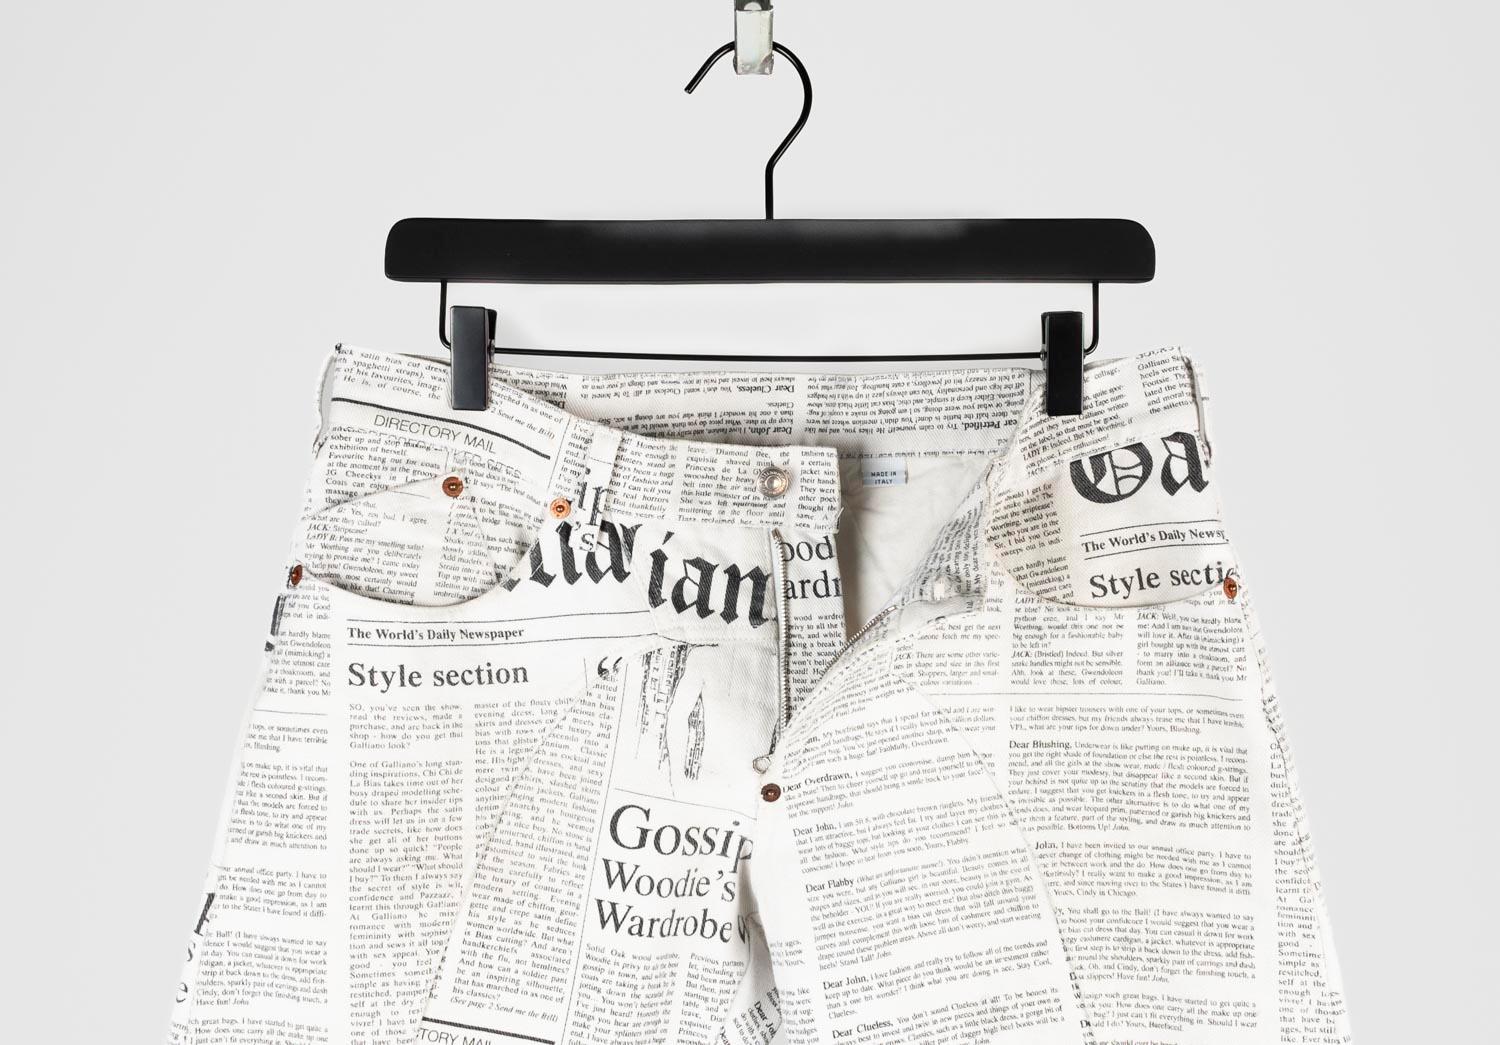 100% echte Vintage John Galliano Zeitung Männer Jeans, nocode
Farbe: weiß schwarz
(Eine tatsächliche Farbe kann ein wenig variieren aufgrund individueller Computer-Bildschirm Interpretation)
MATERIAL: 100% Baumwolle
Tag Größe: ITA 48, läuft